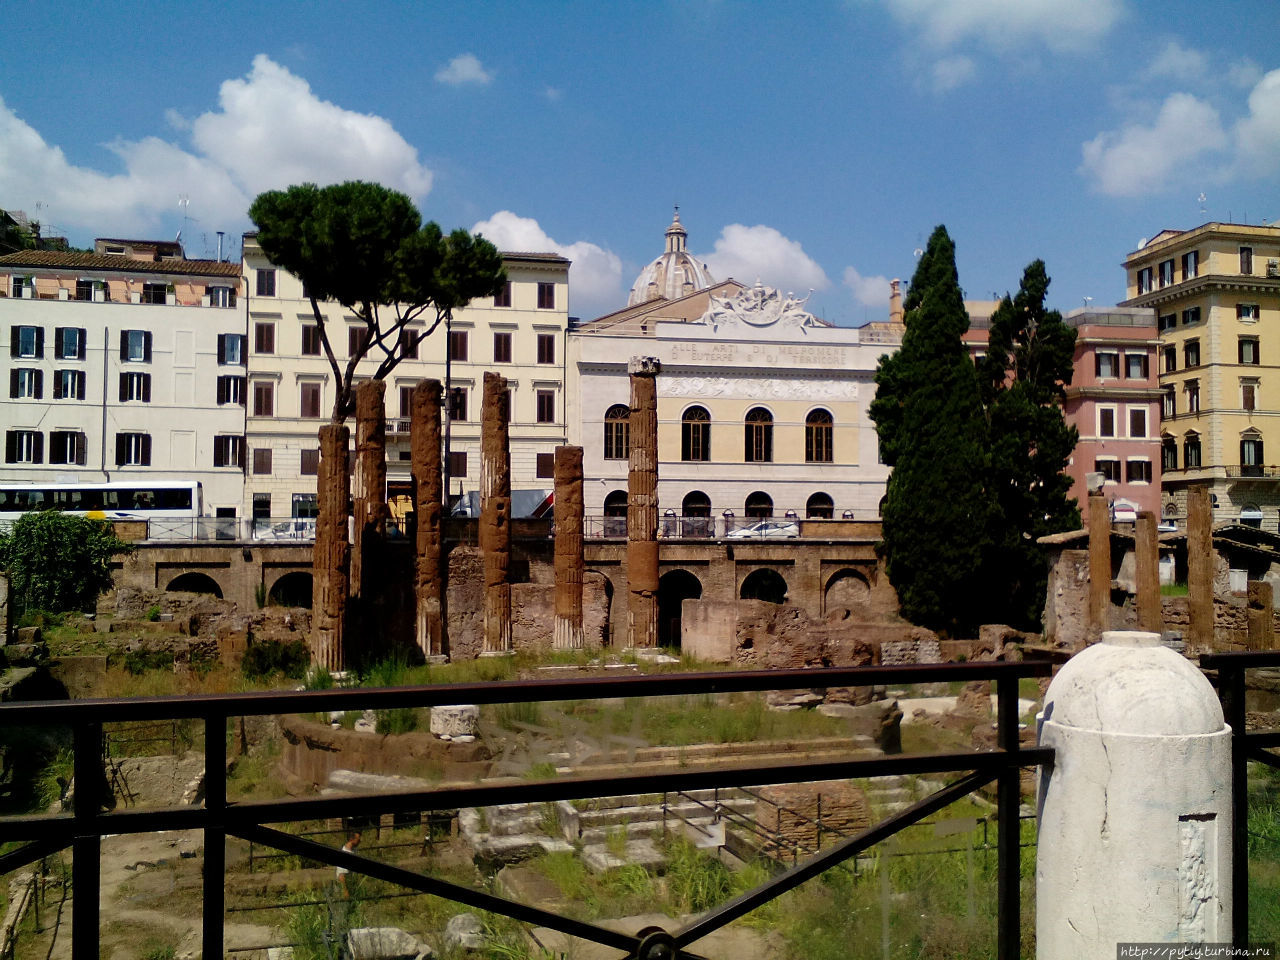 По рассказу экскурсовода — на этом месте убили Юлия Цезаря Рим, Италия